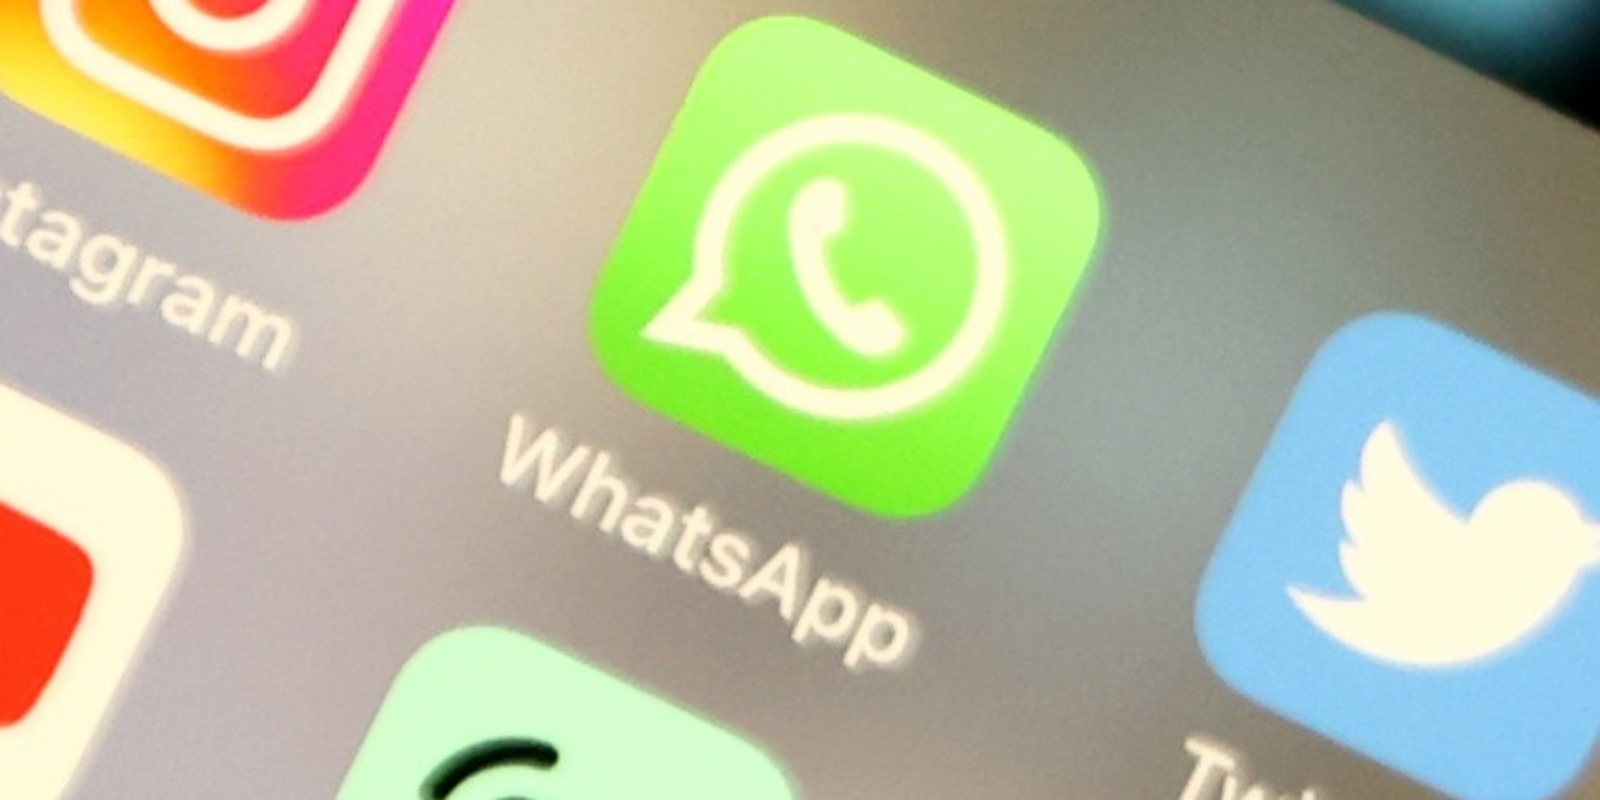 Whatsapp online verbergen für bestimmte personen